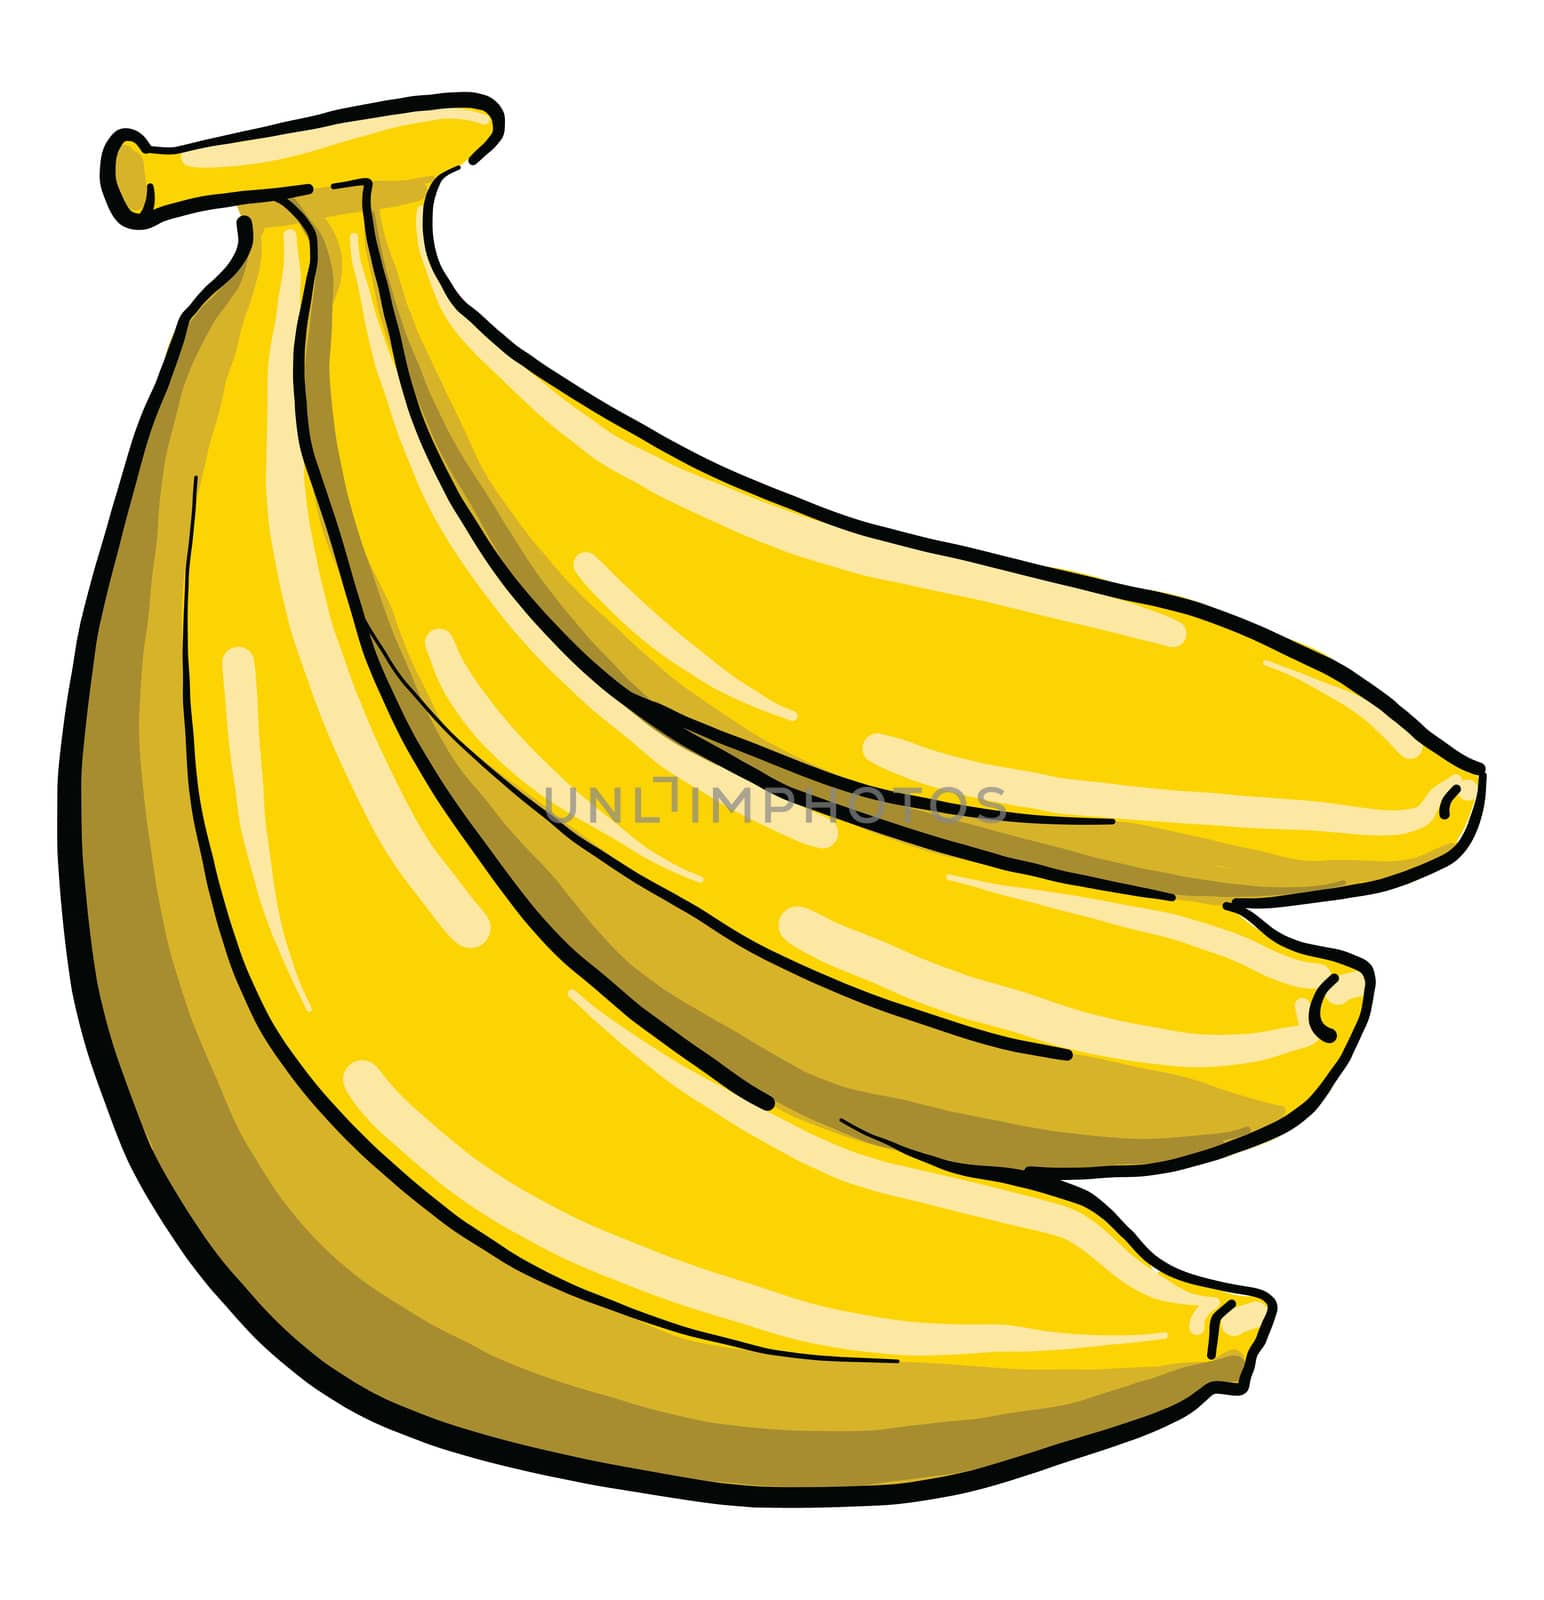 Pack of bananas , illustration, vector on white background